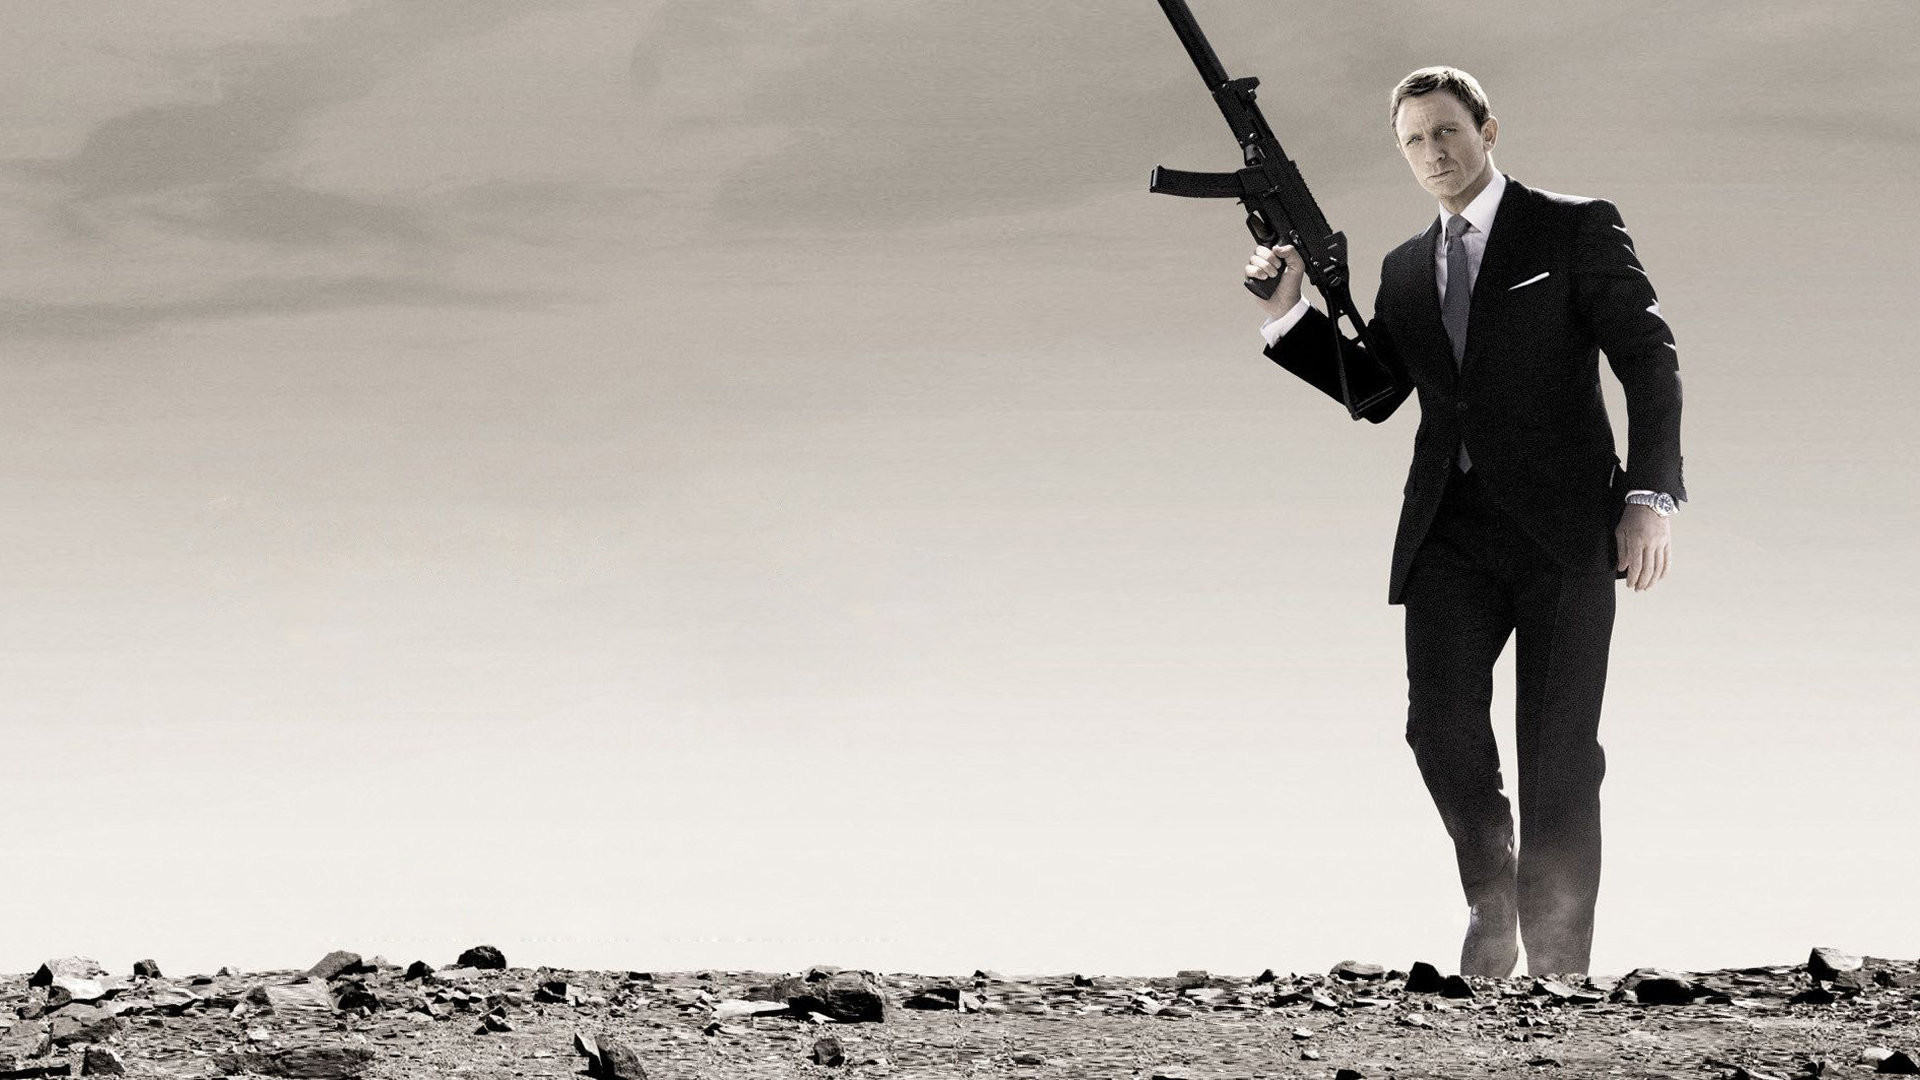 james bond 007 fond d'écran,permanent,costume,tir sportif,tournage,vêtements de cérémonie